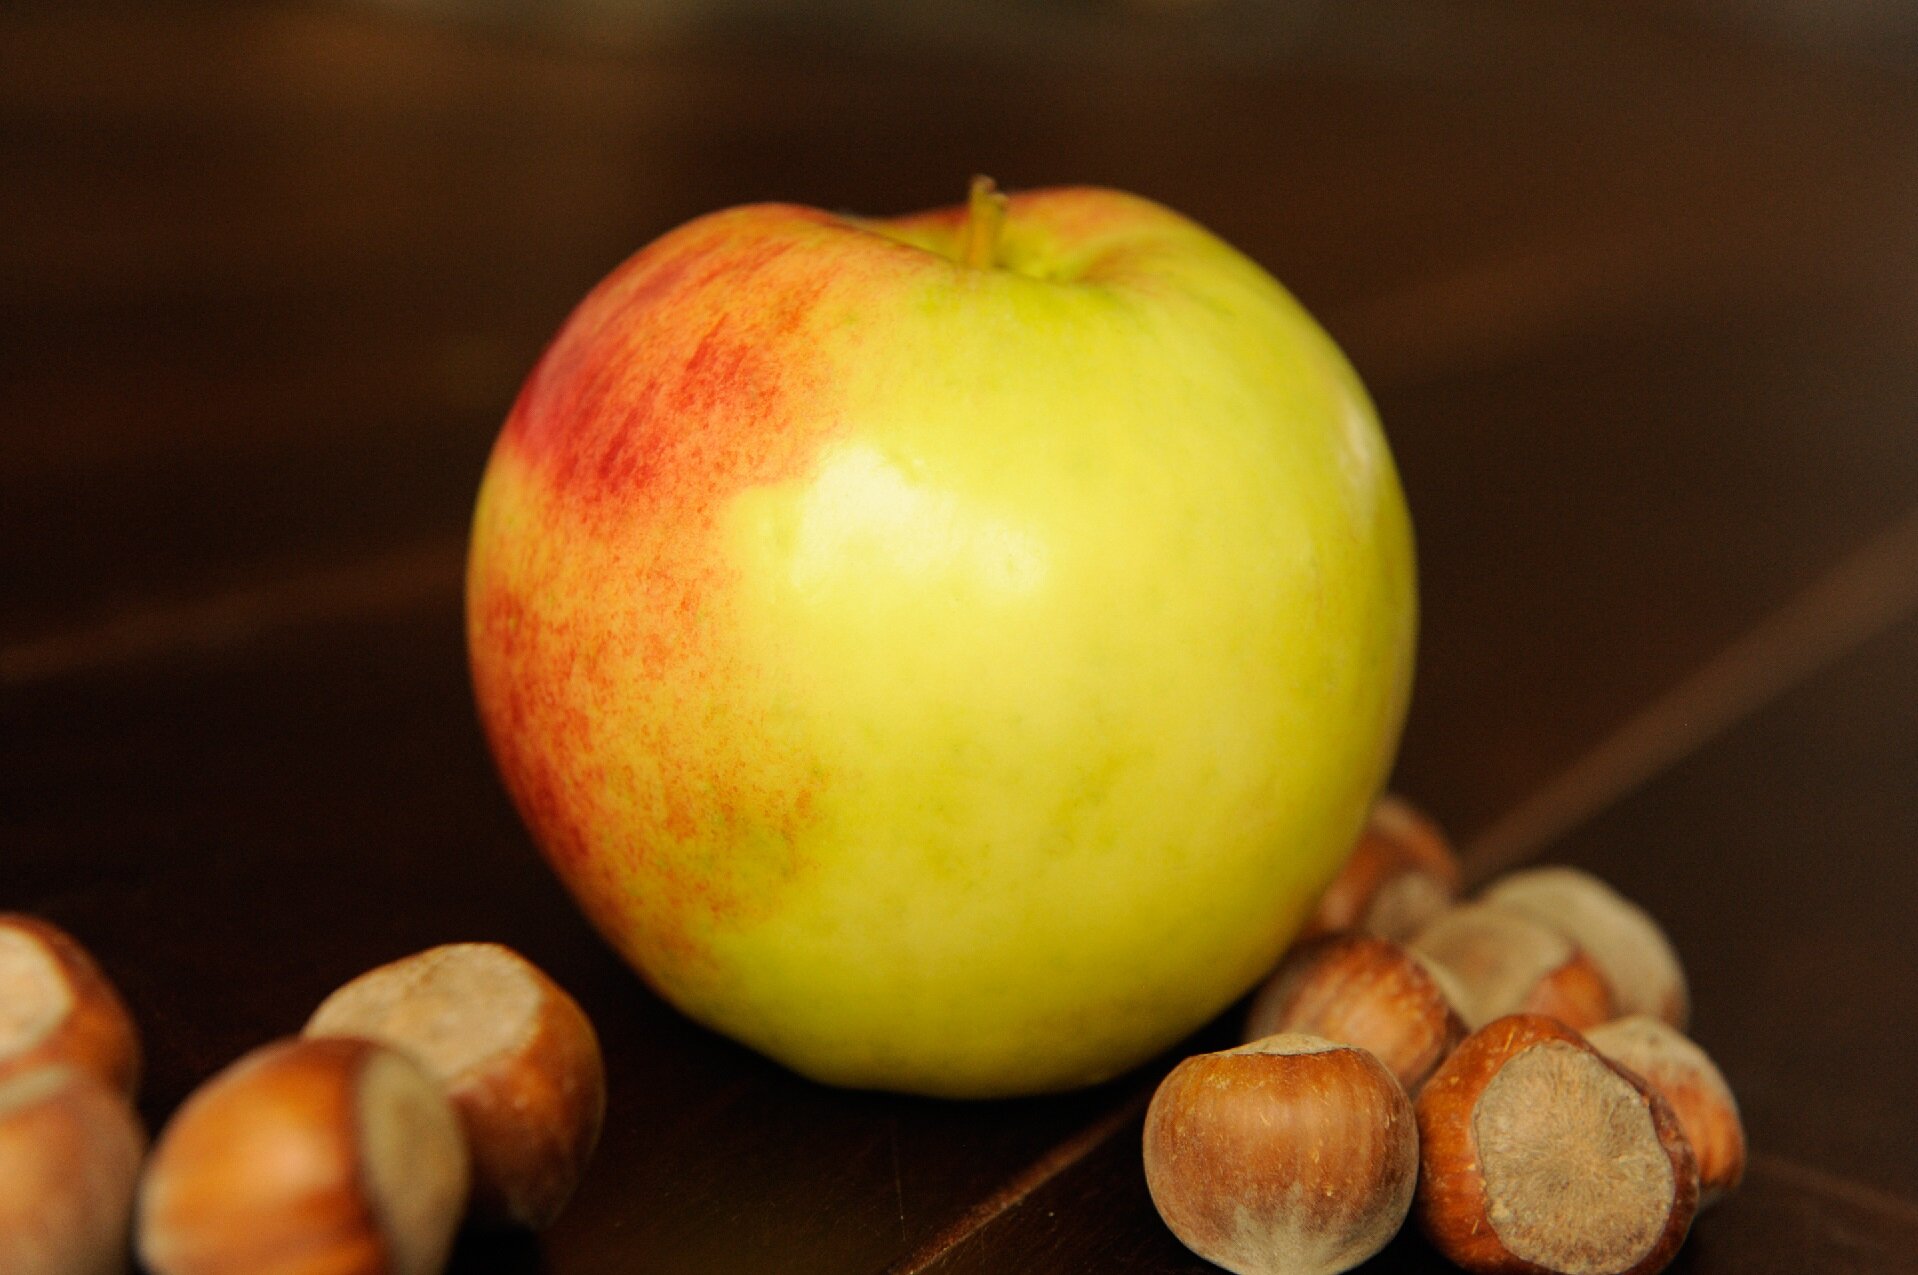 Na fotografii przedstawiono leżące na drewnianym stole dojrzałe jabłko, wokół którego znajdują się rozsypane orzechy laskowe. Skórka na widocznej prawej części jabłka jest żółta, natomiast im bardziej na lewo tym jest bardziej czerwona.  